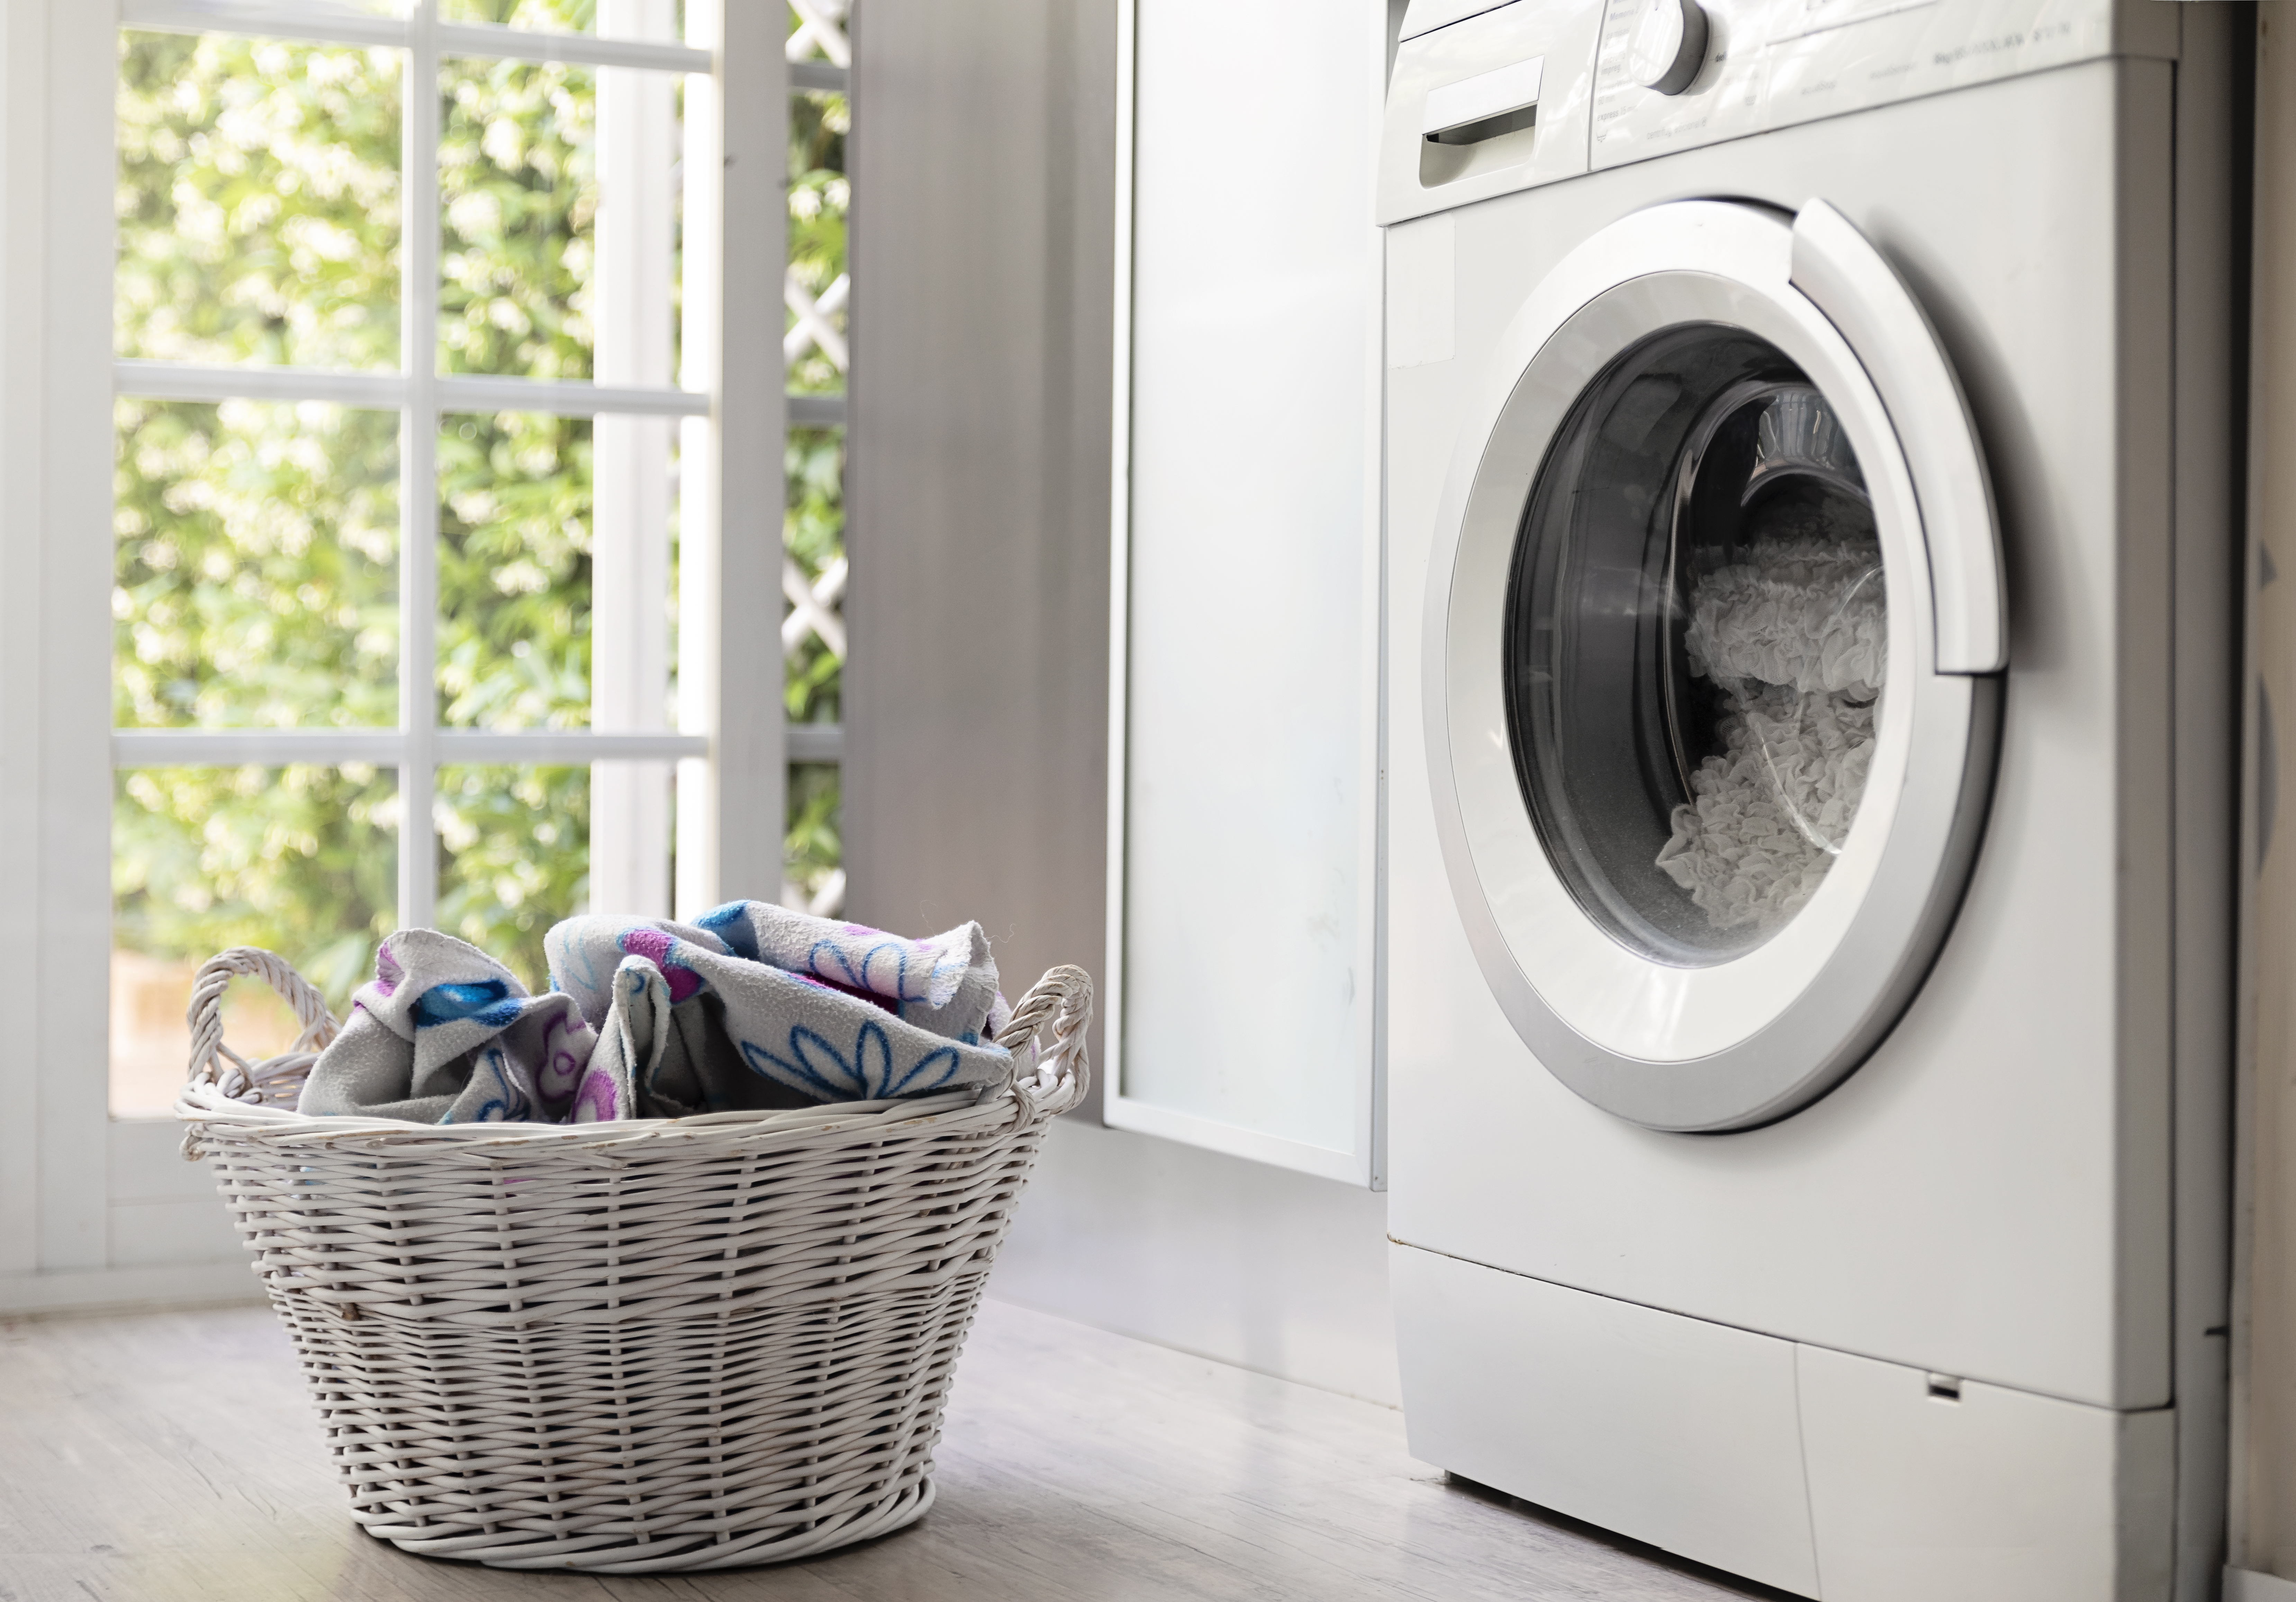 Az 5 leggyakoribb mosási hiba, amely tönkre teheti a ruhákat és a  elronthatja a mosógépet - kiskegyed.hu